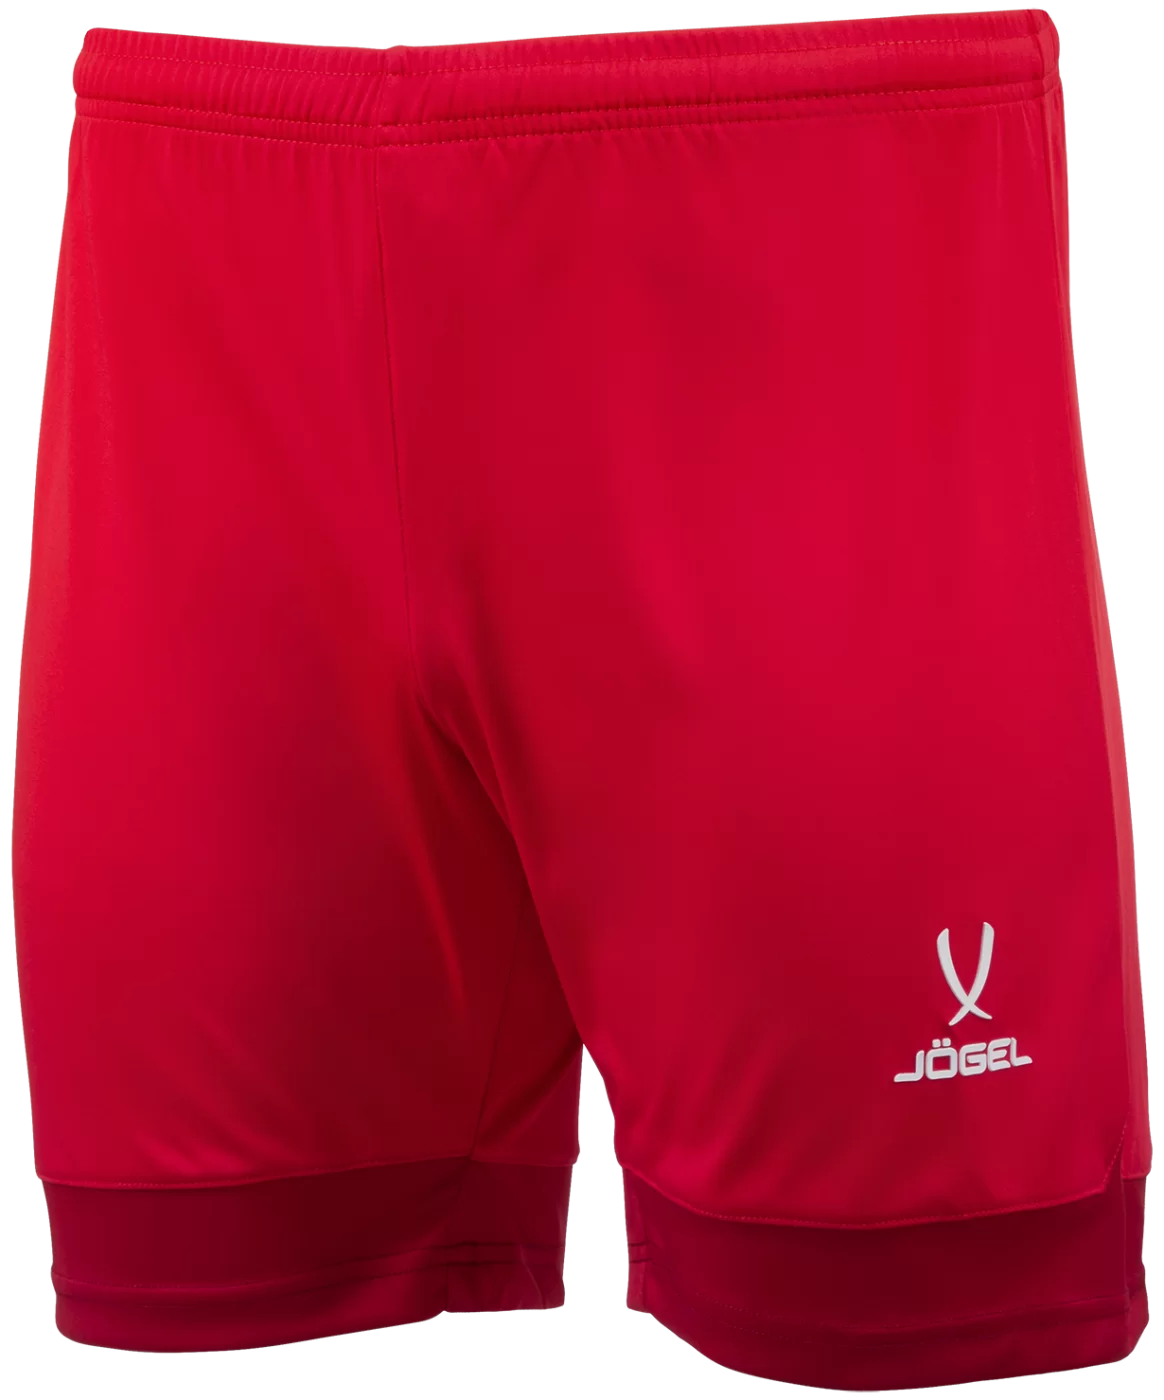 Реальное фото Шорты игровые DIVISION PerFormDRY Union Shorts, красный/темно-красный/белый от магазина СпортСЕ